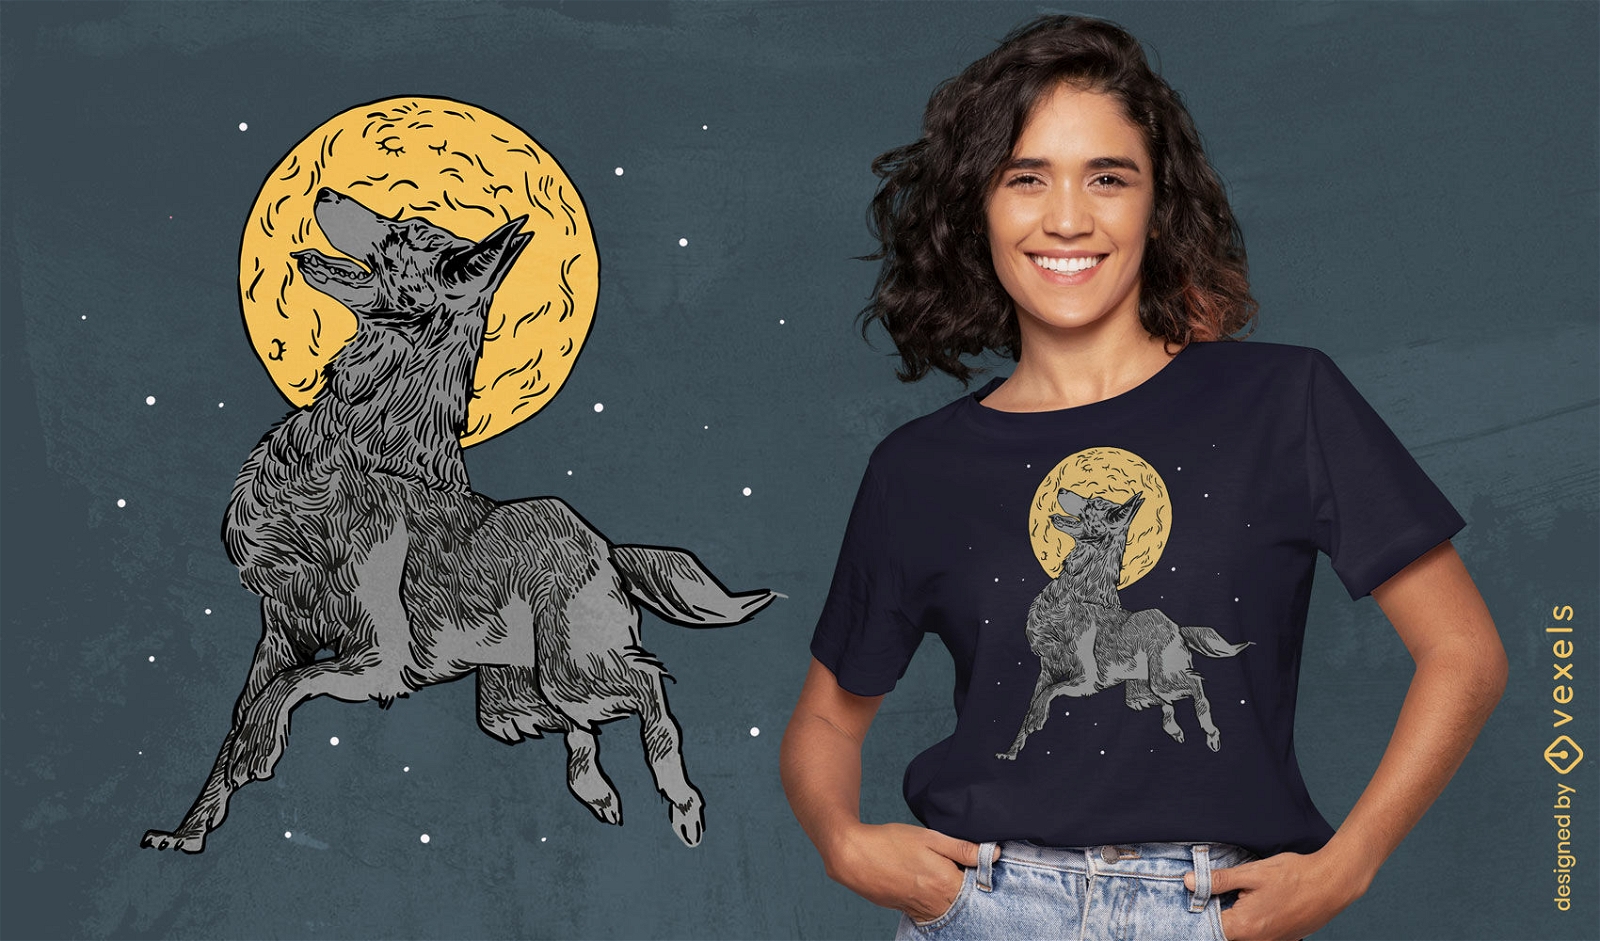 Vollmond-T-Shirt-Design mit heulendem Wolf